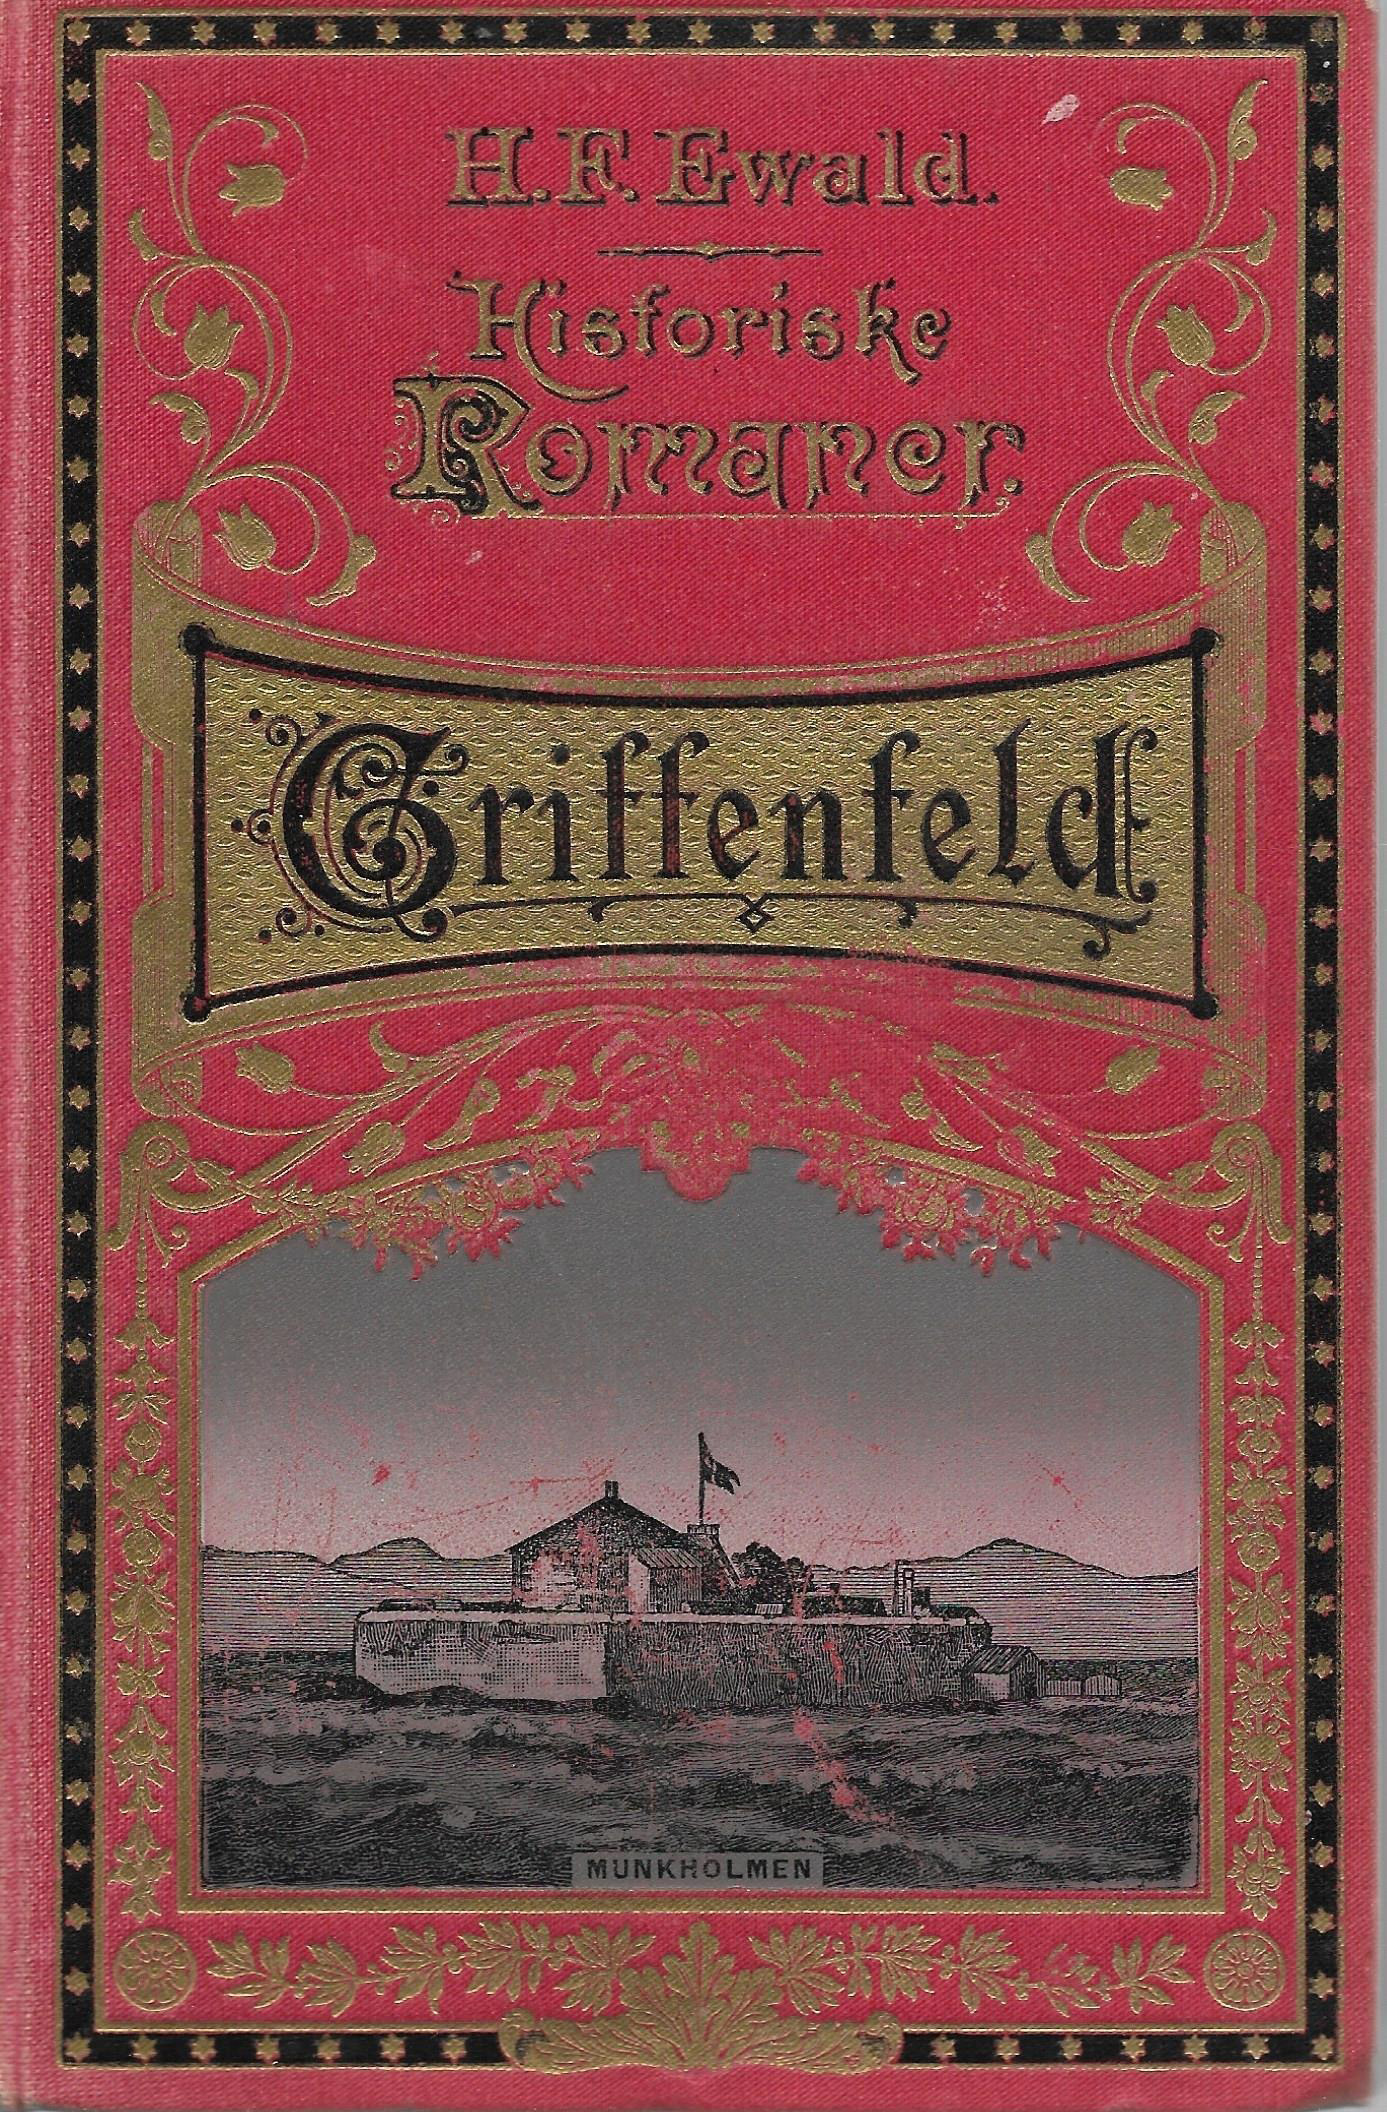 Griffenfeld - H F Ewald 1911-1